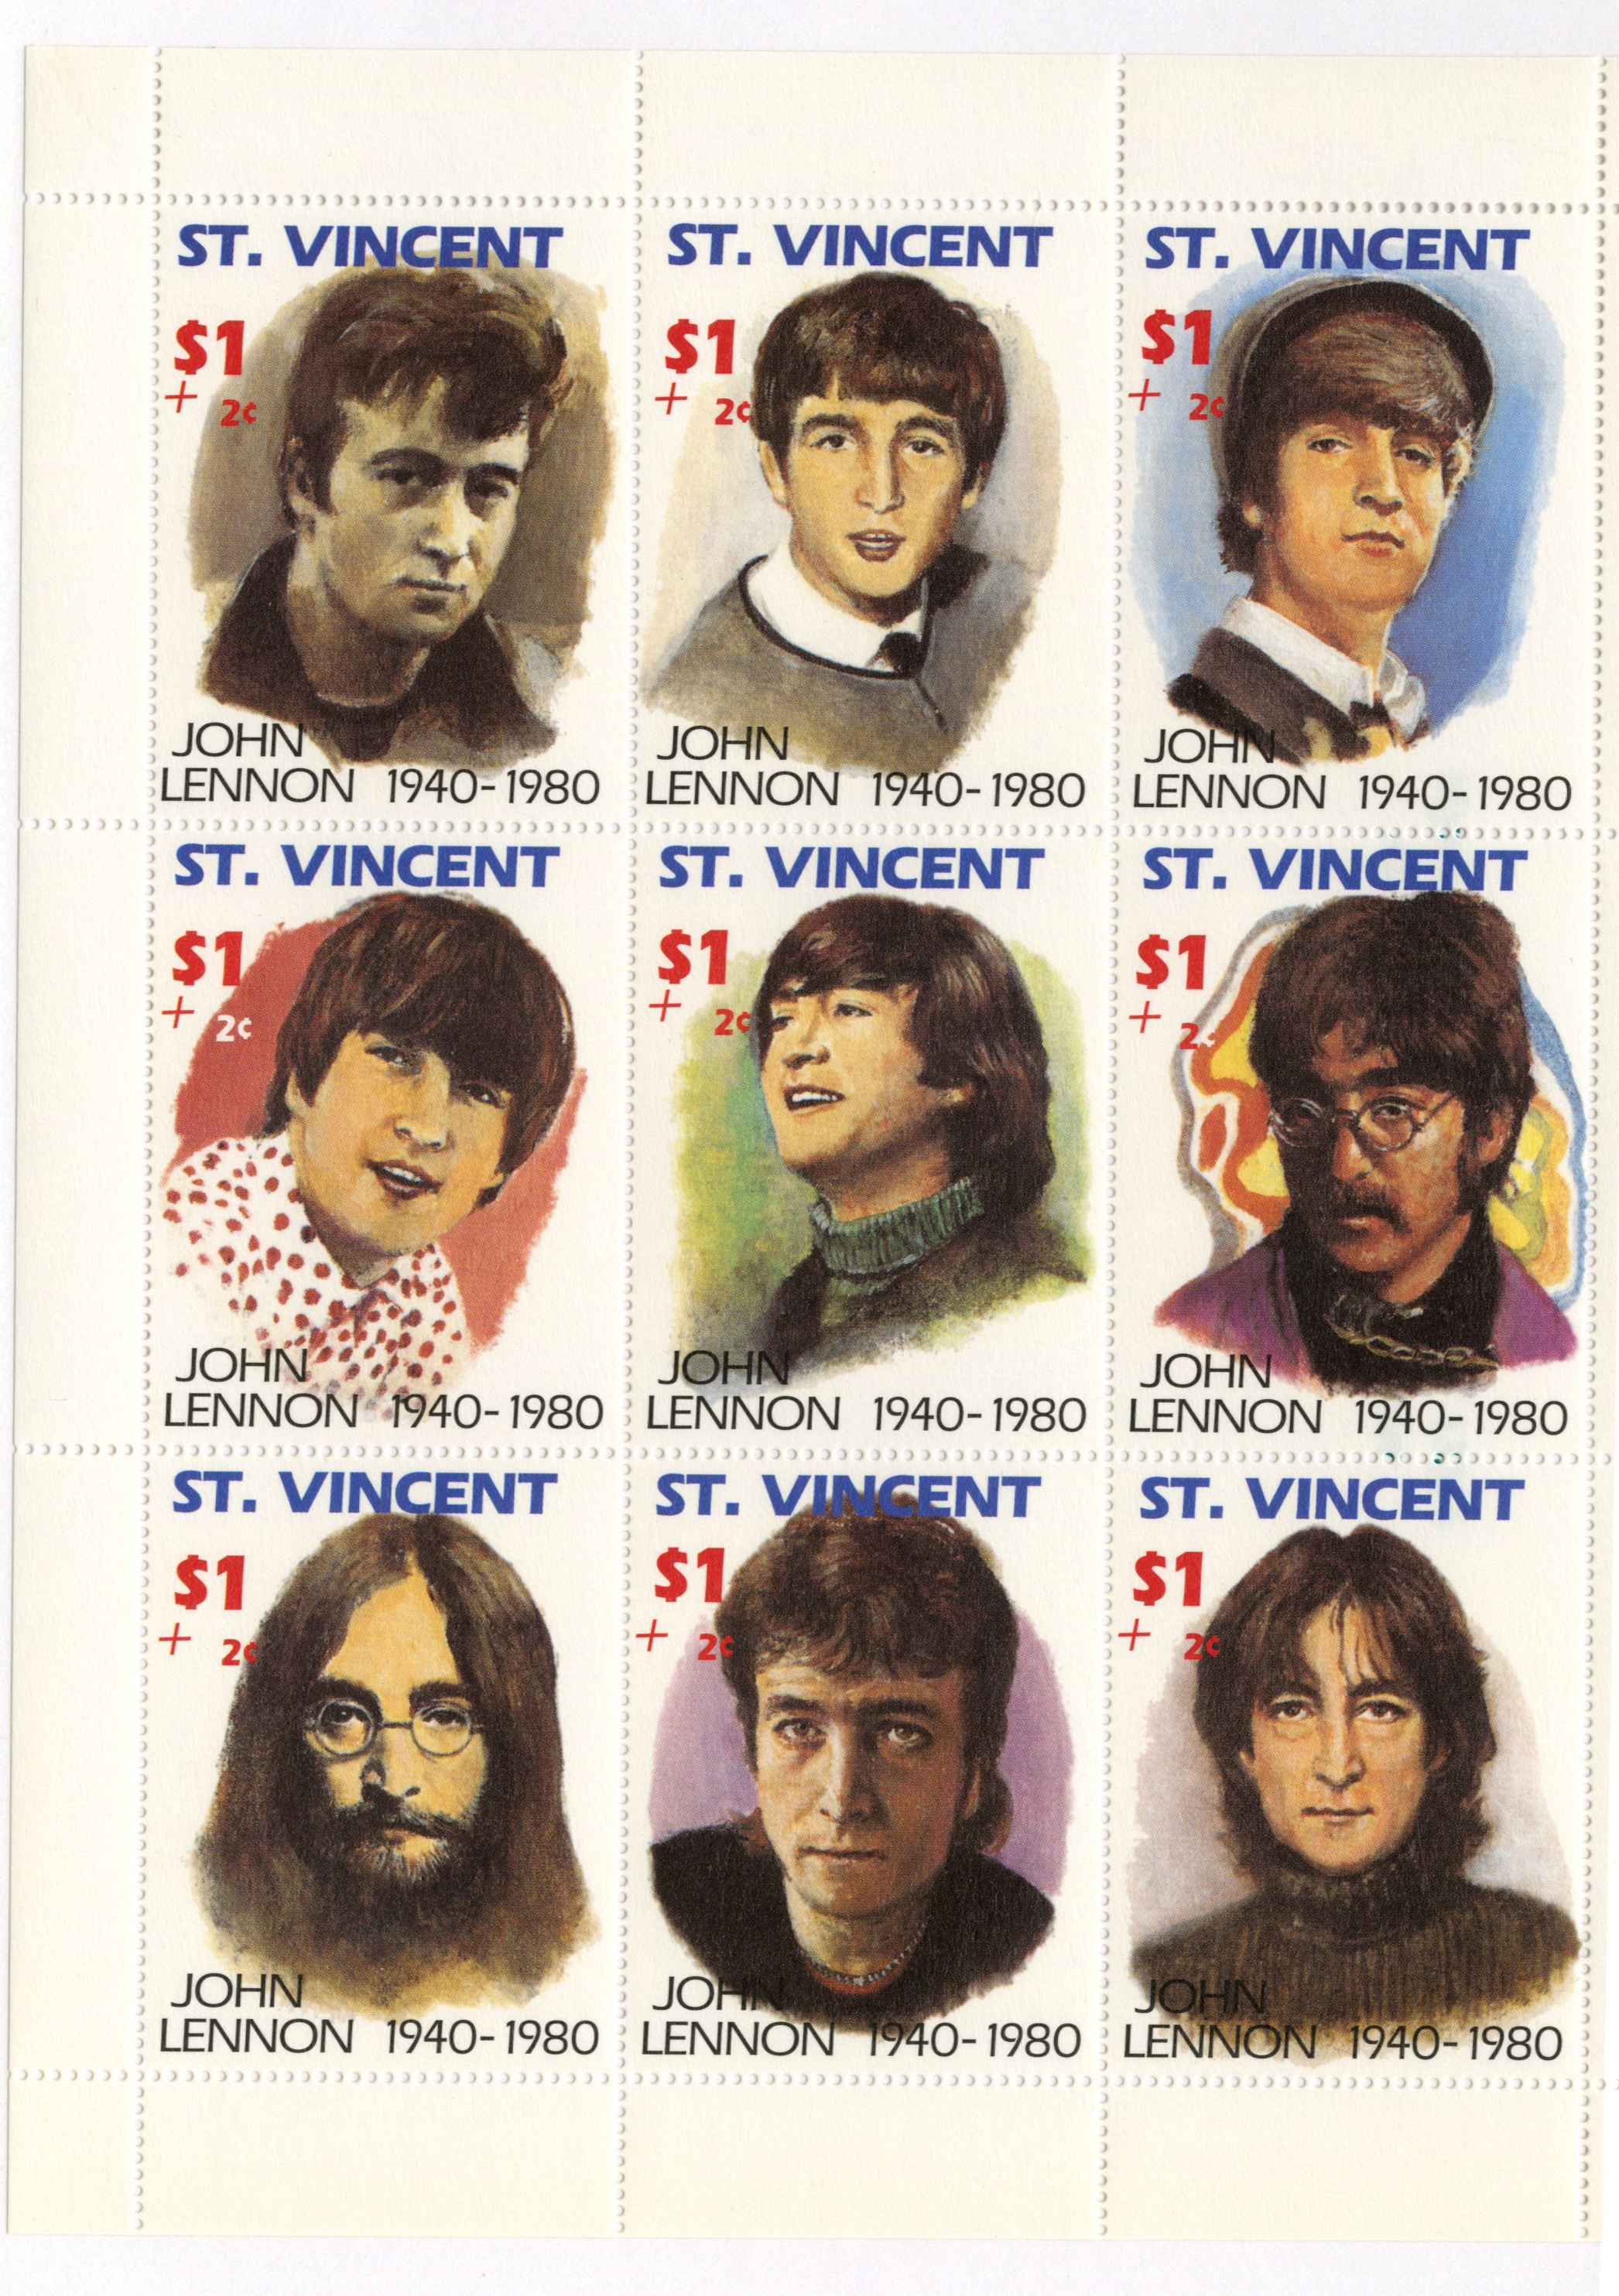 1991 St. Vincent stamps honoring John Lennon